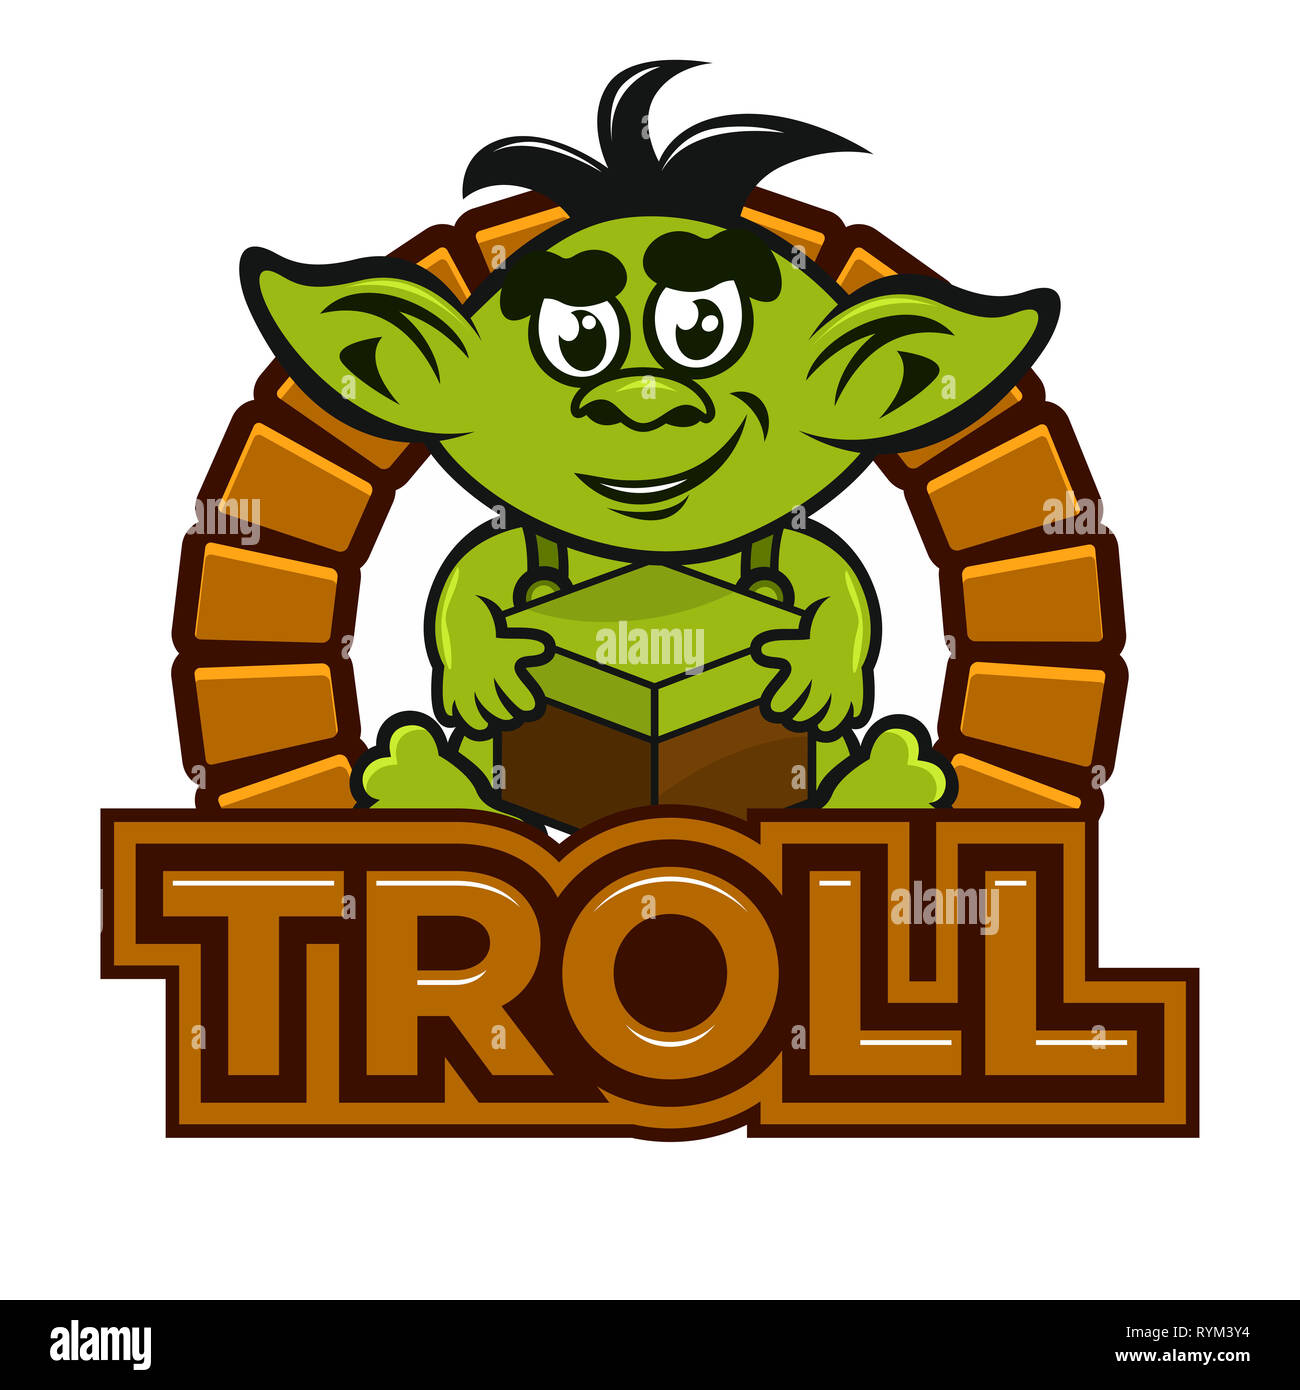 Trolls orcs ogres goblins and gremlins monster girls